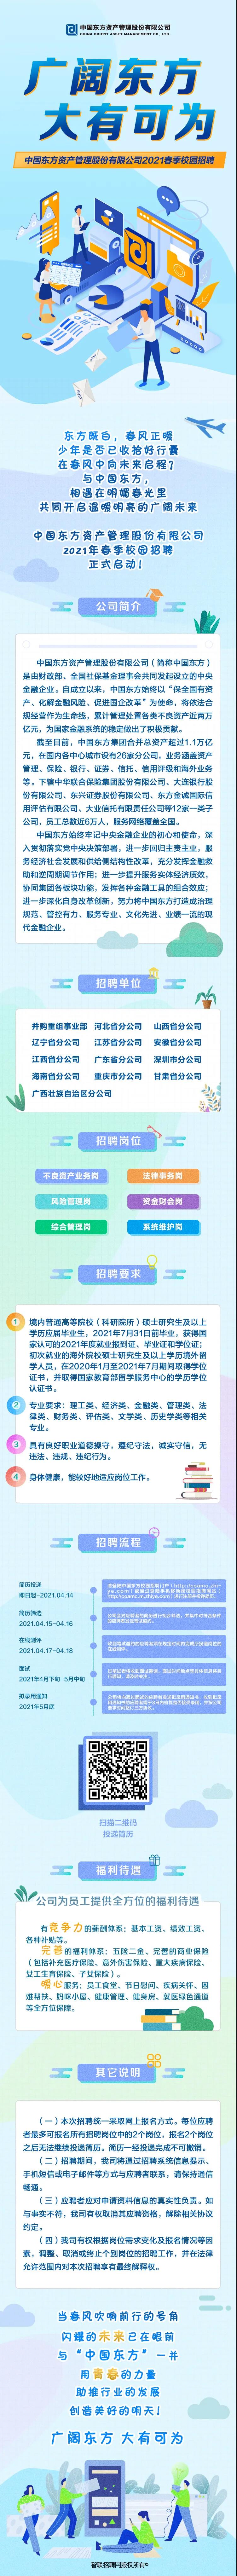 2021中国东方资产管理春季校园招聘启动